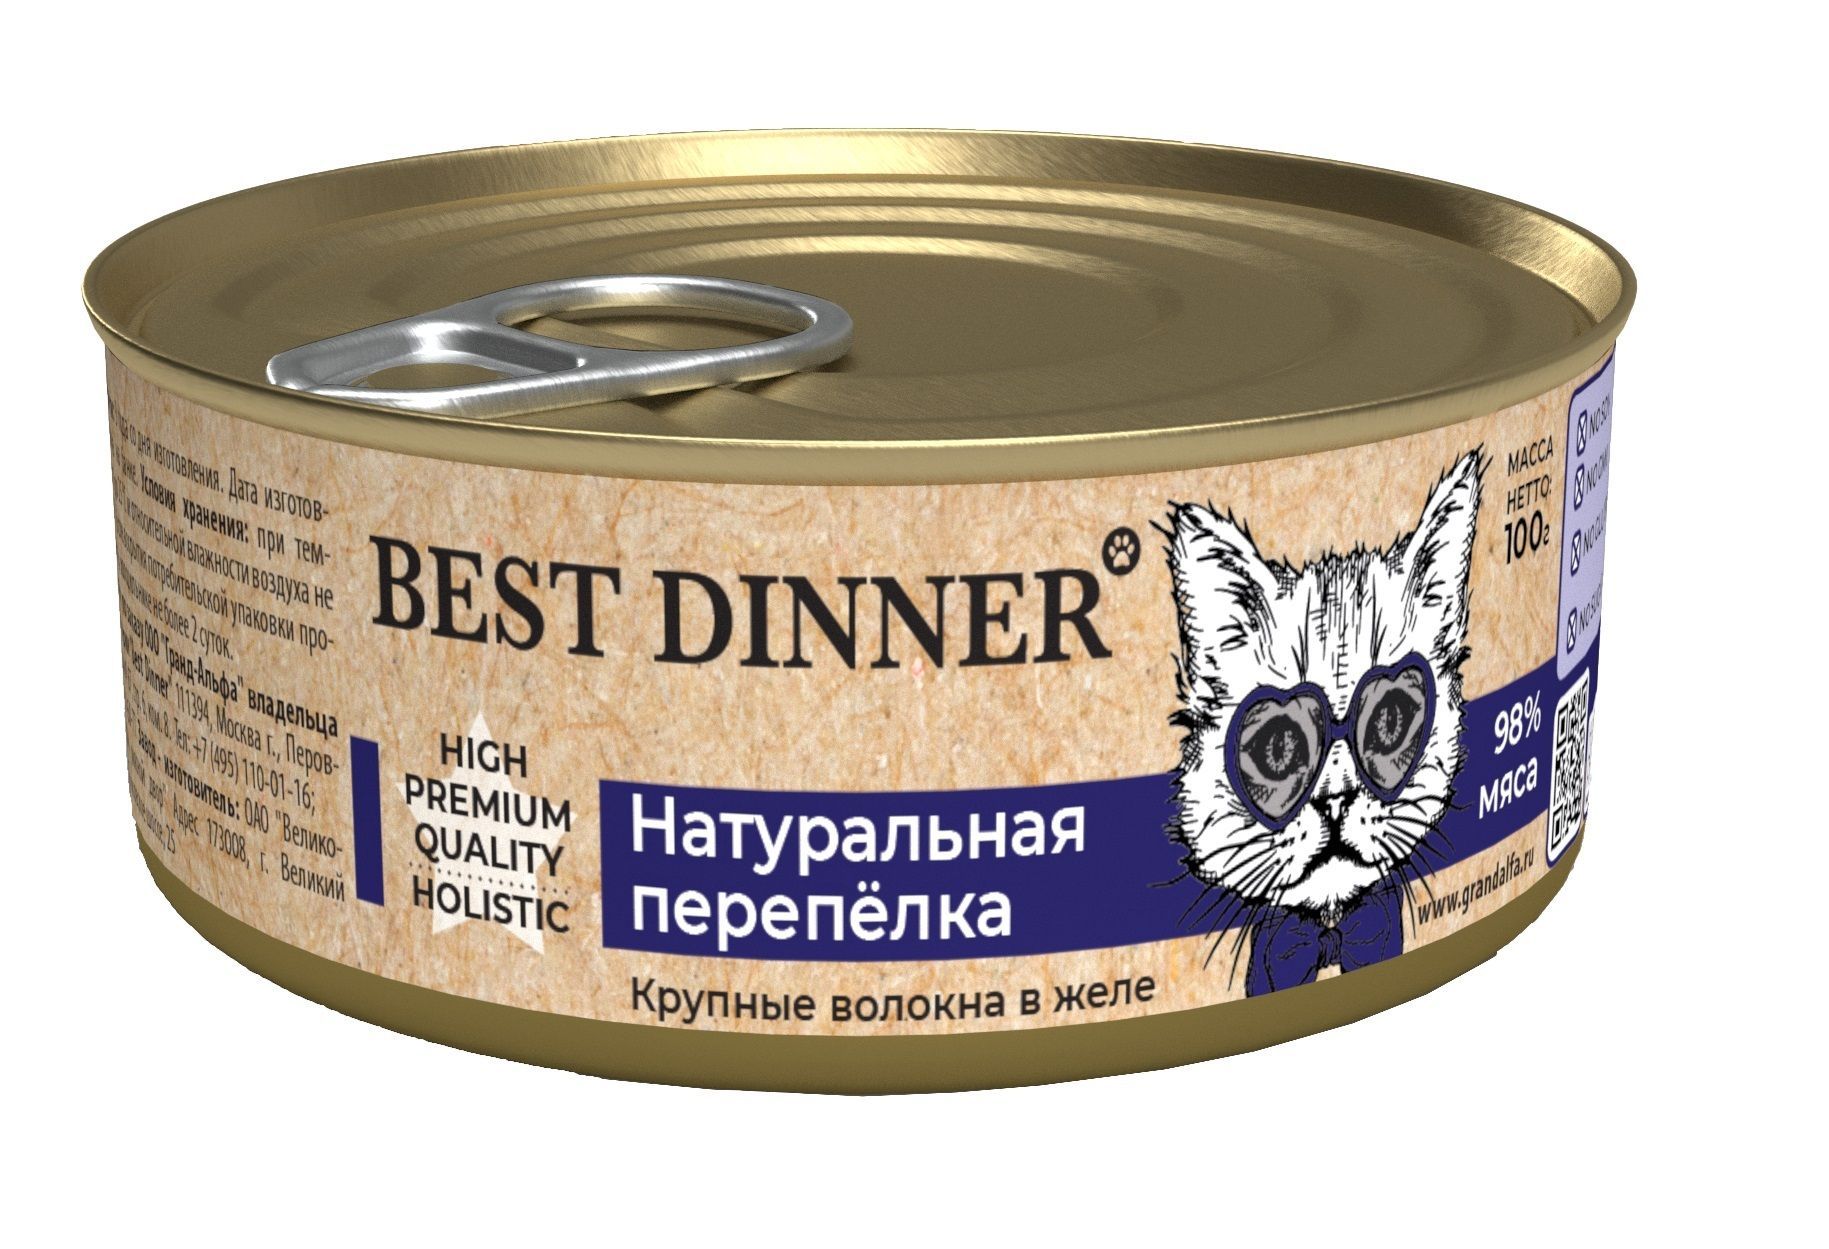 Best Dinner Higt Premium консервы 100г для кошек и котят натуральная перепелка фото, цены, купить